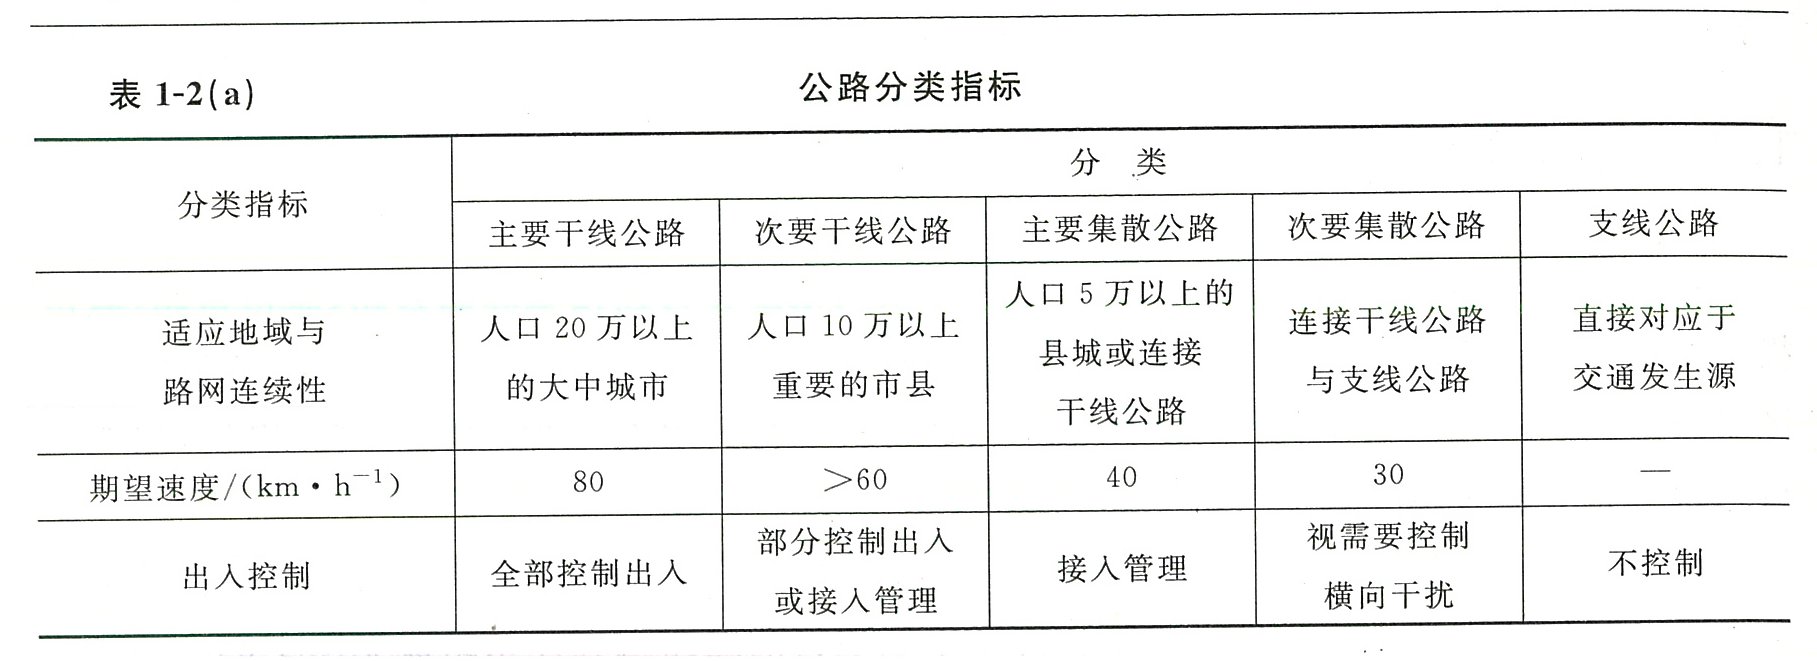 表1-2（a）公路分类指标